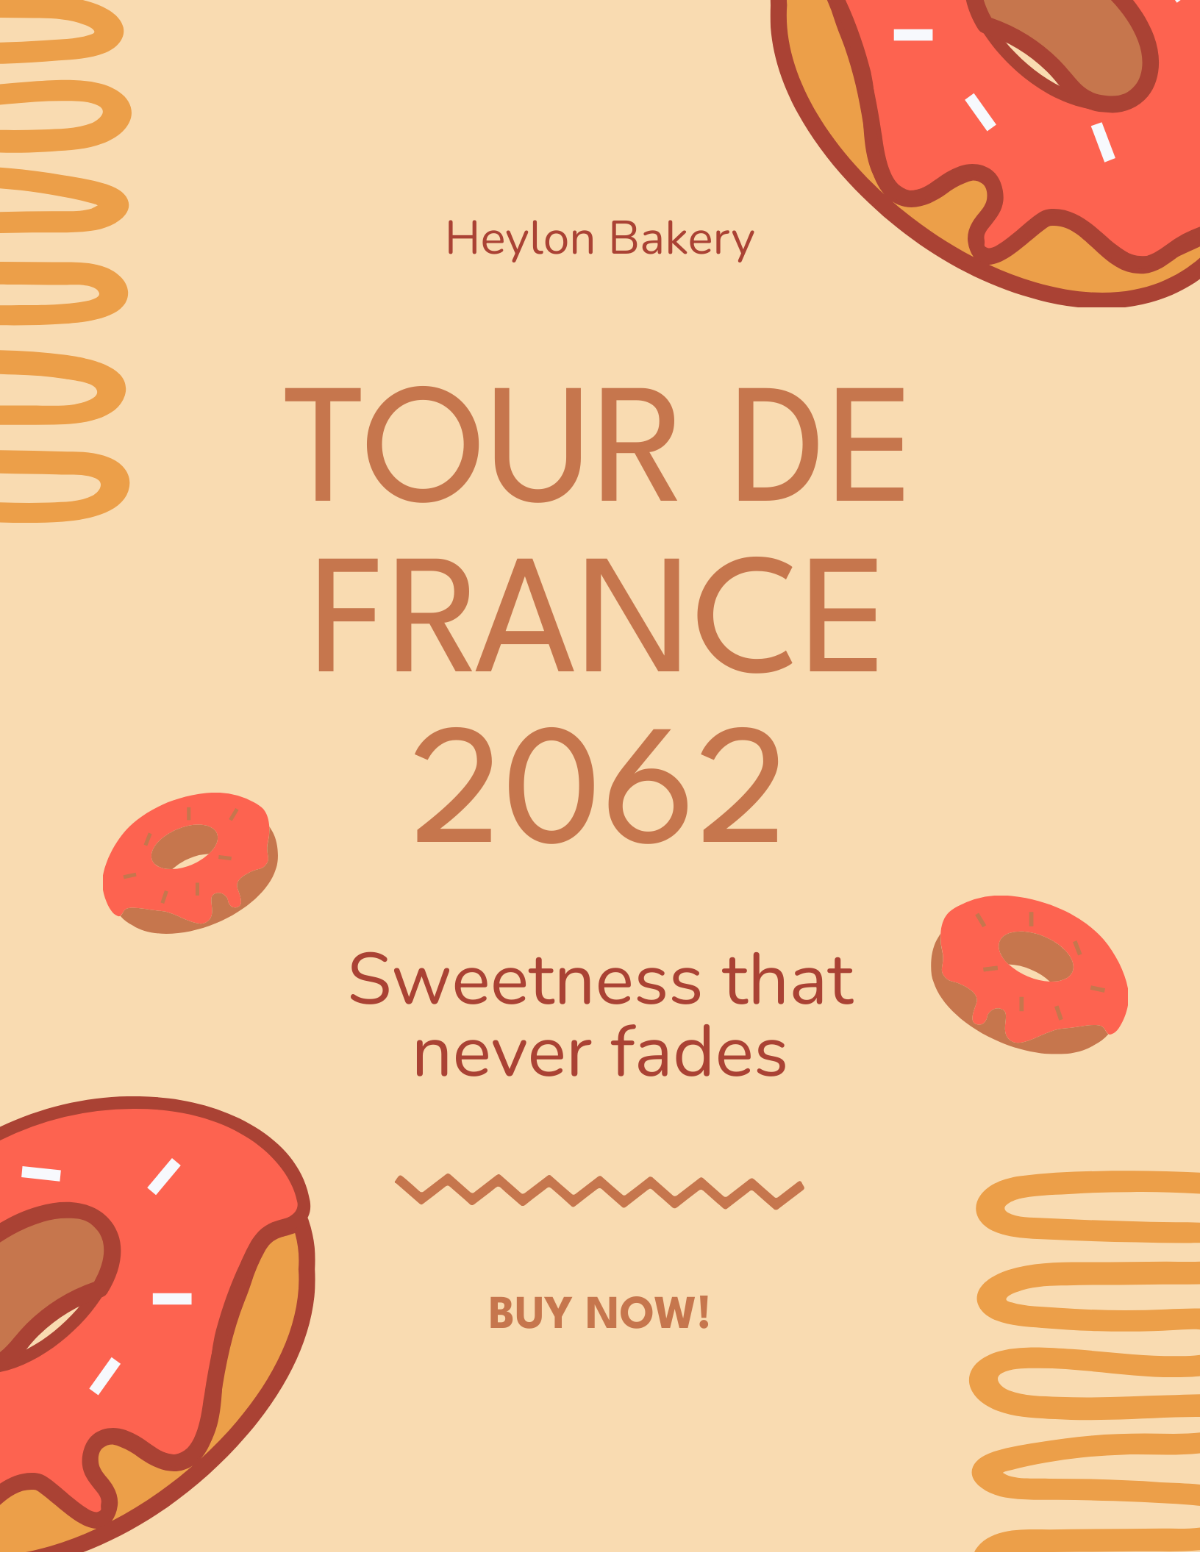 Free Vintage Tour De France Flyer Template